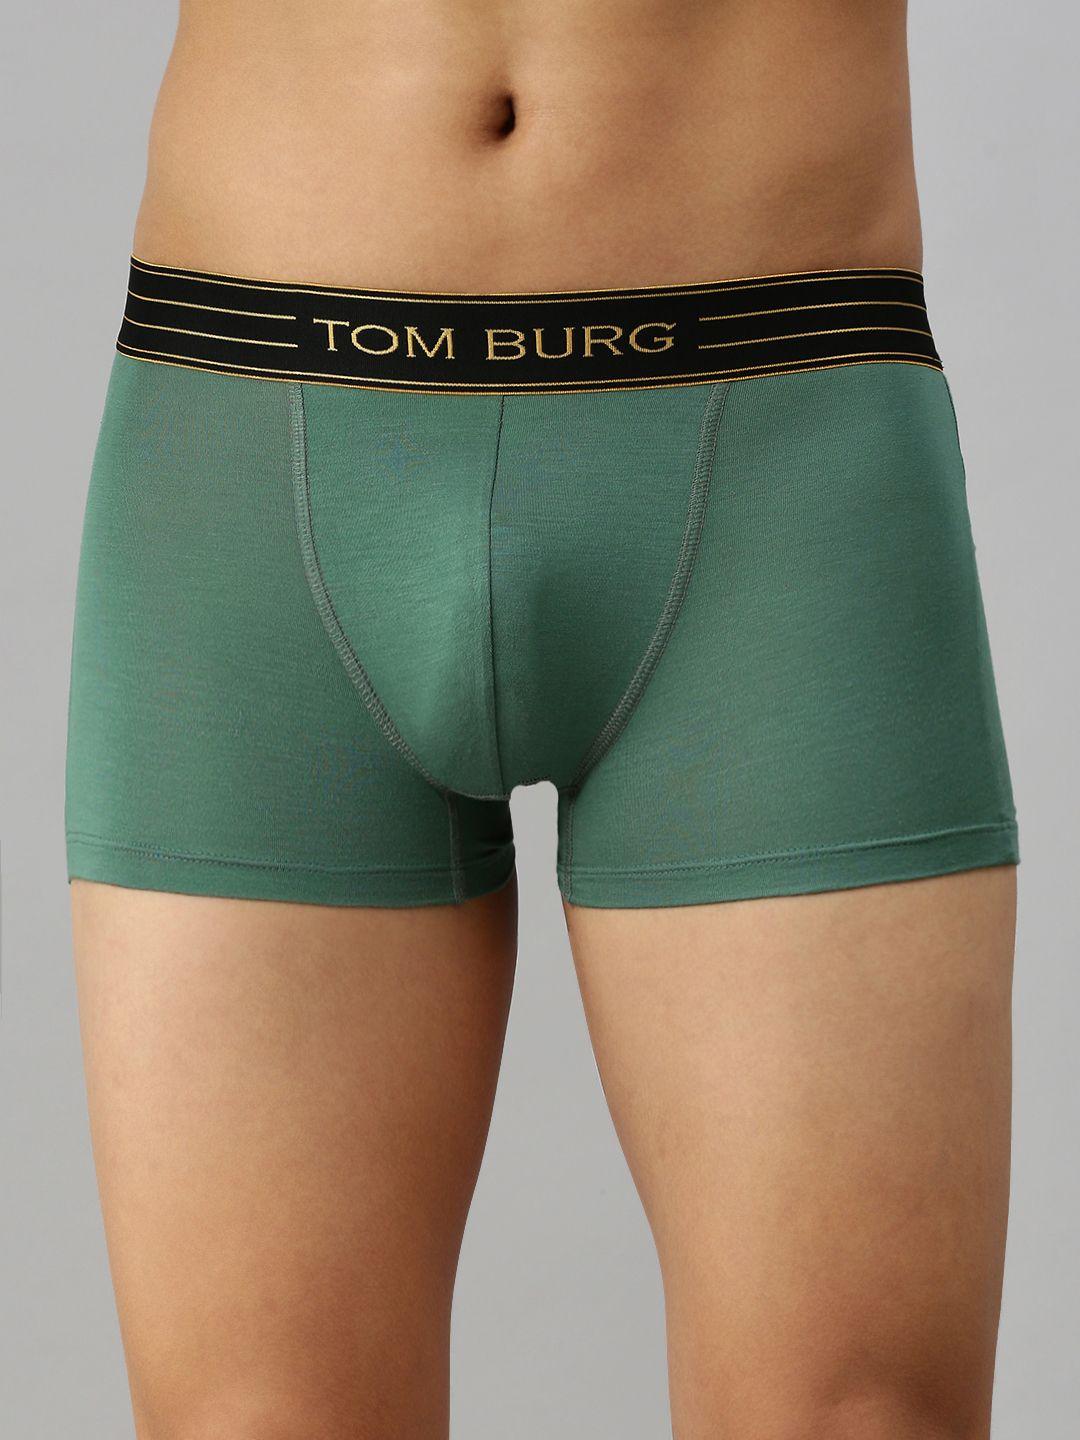 tom burg men olive green solid trunks 3037